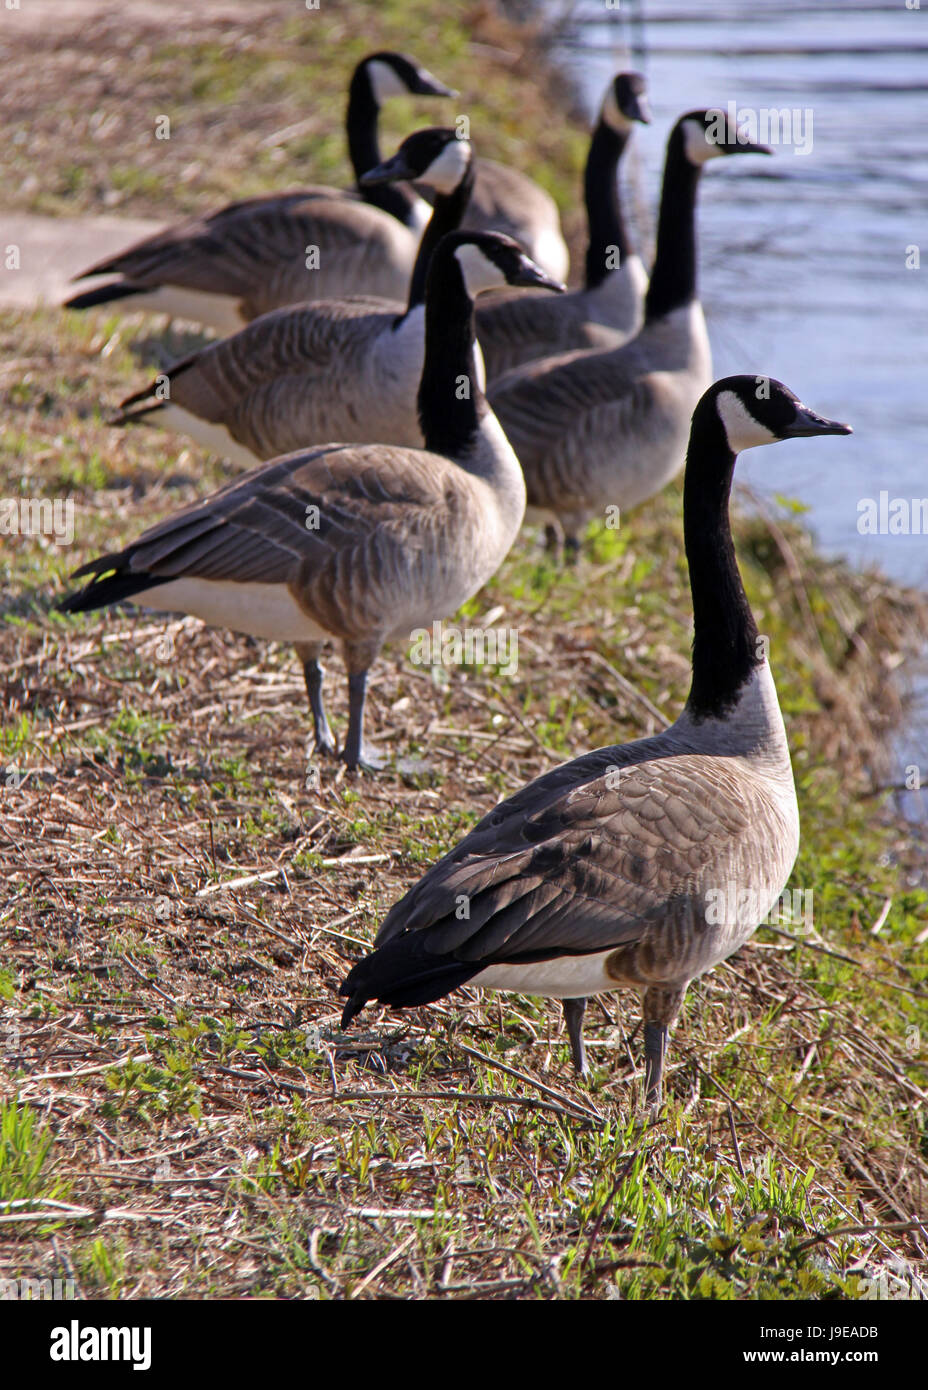 geese, poultry, brant, bank, shore, heidelberg, kanadagans, kanadagnse, branta, Stock Photo